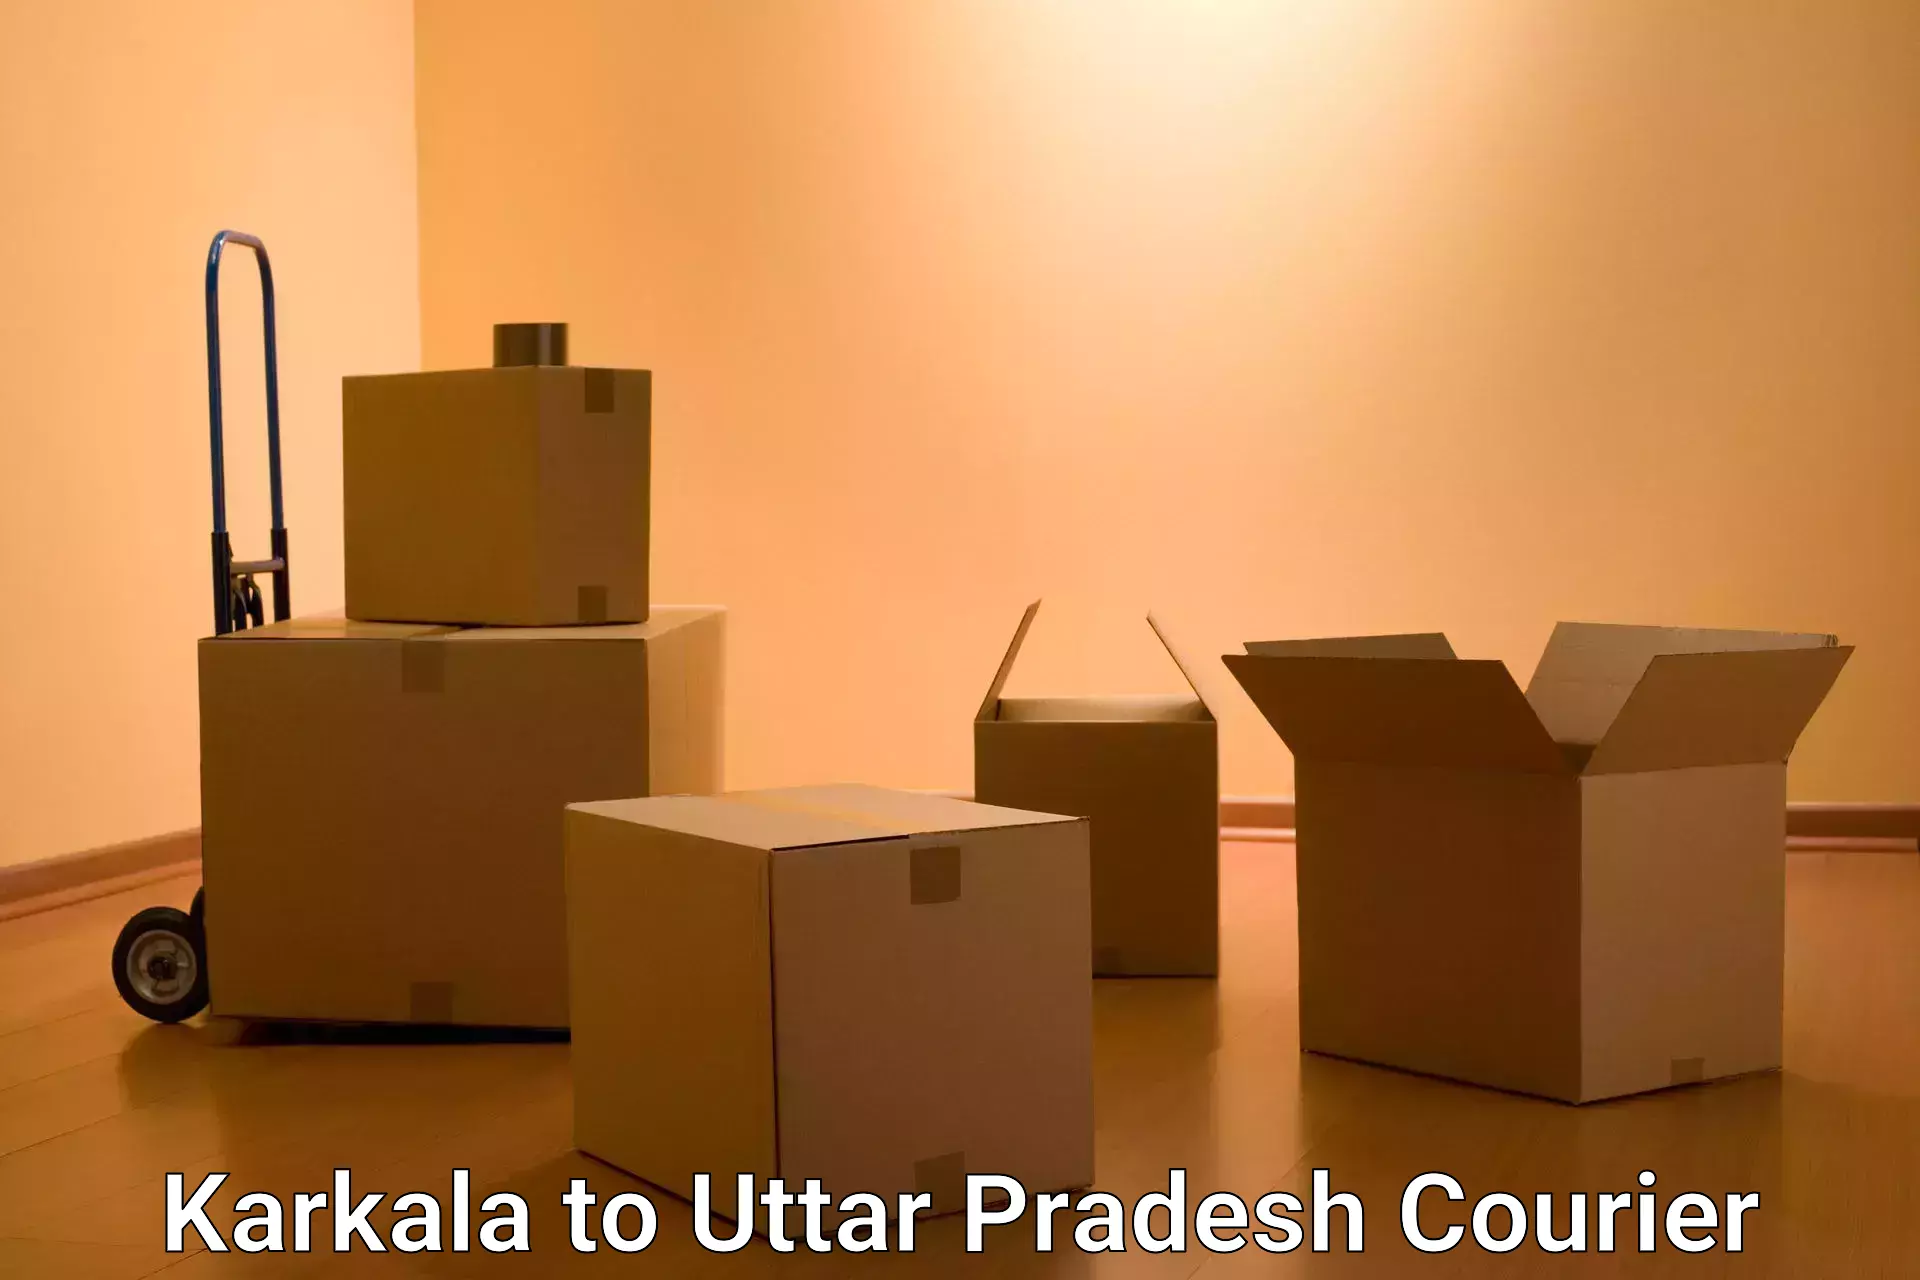 Efficient order fulfillment in Karkala to Uttar Pradesh